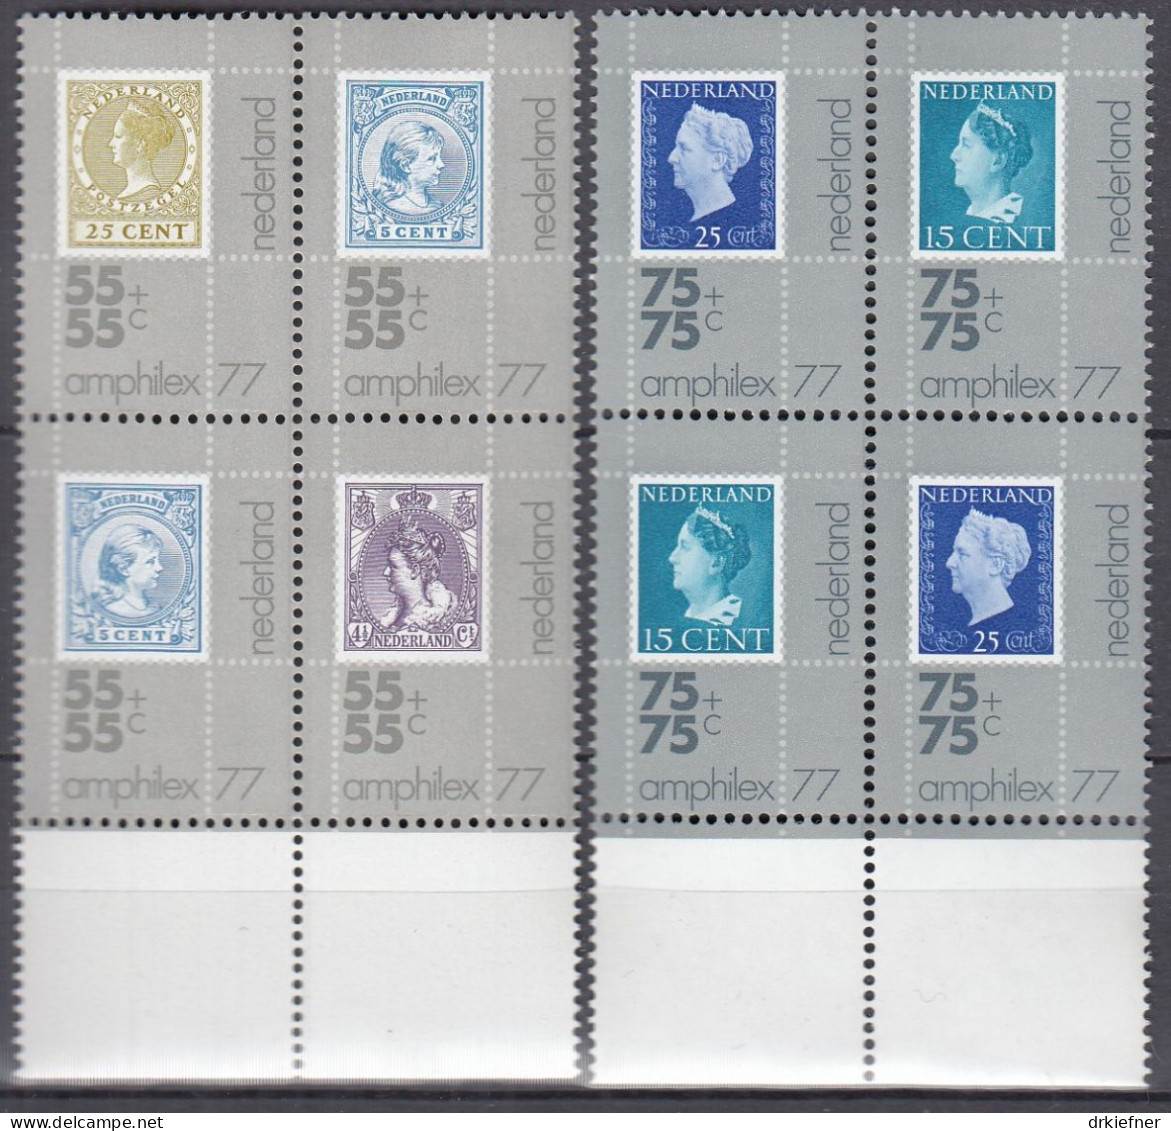 NIEDERLANDE  1083-1087, 4erBlock, Postfrisch **, Internationale Briefmarkenausstellung AMPHILEX ’77, 1976 - Nuovi